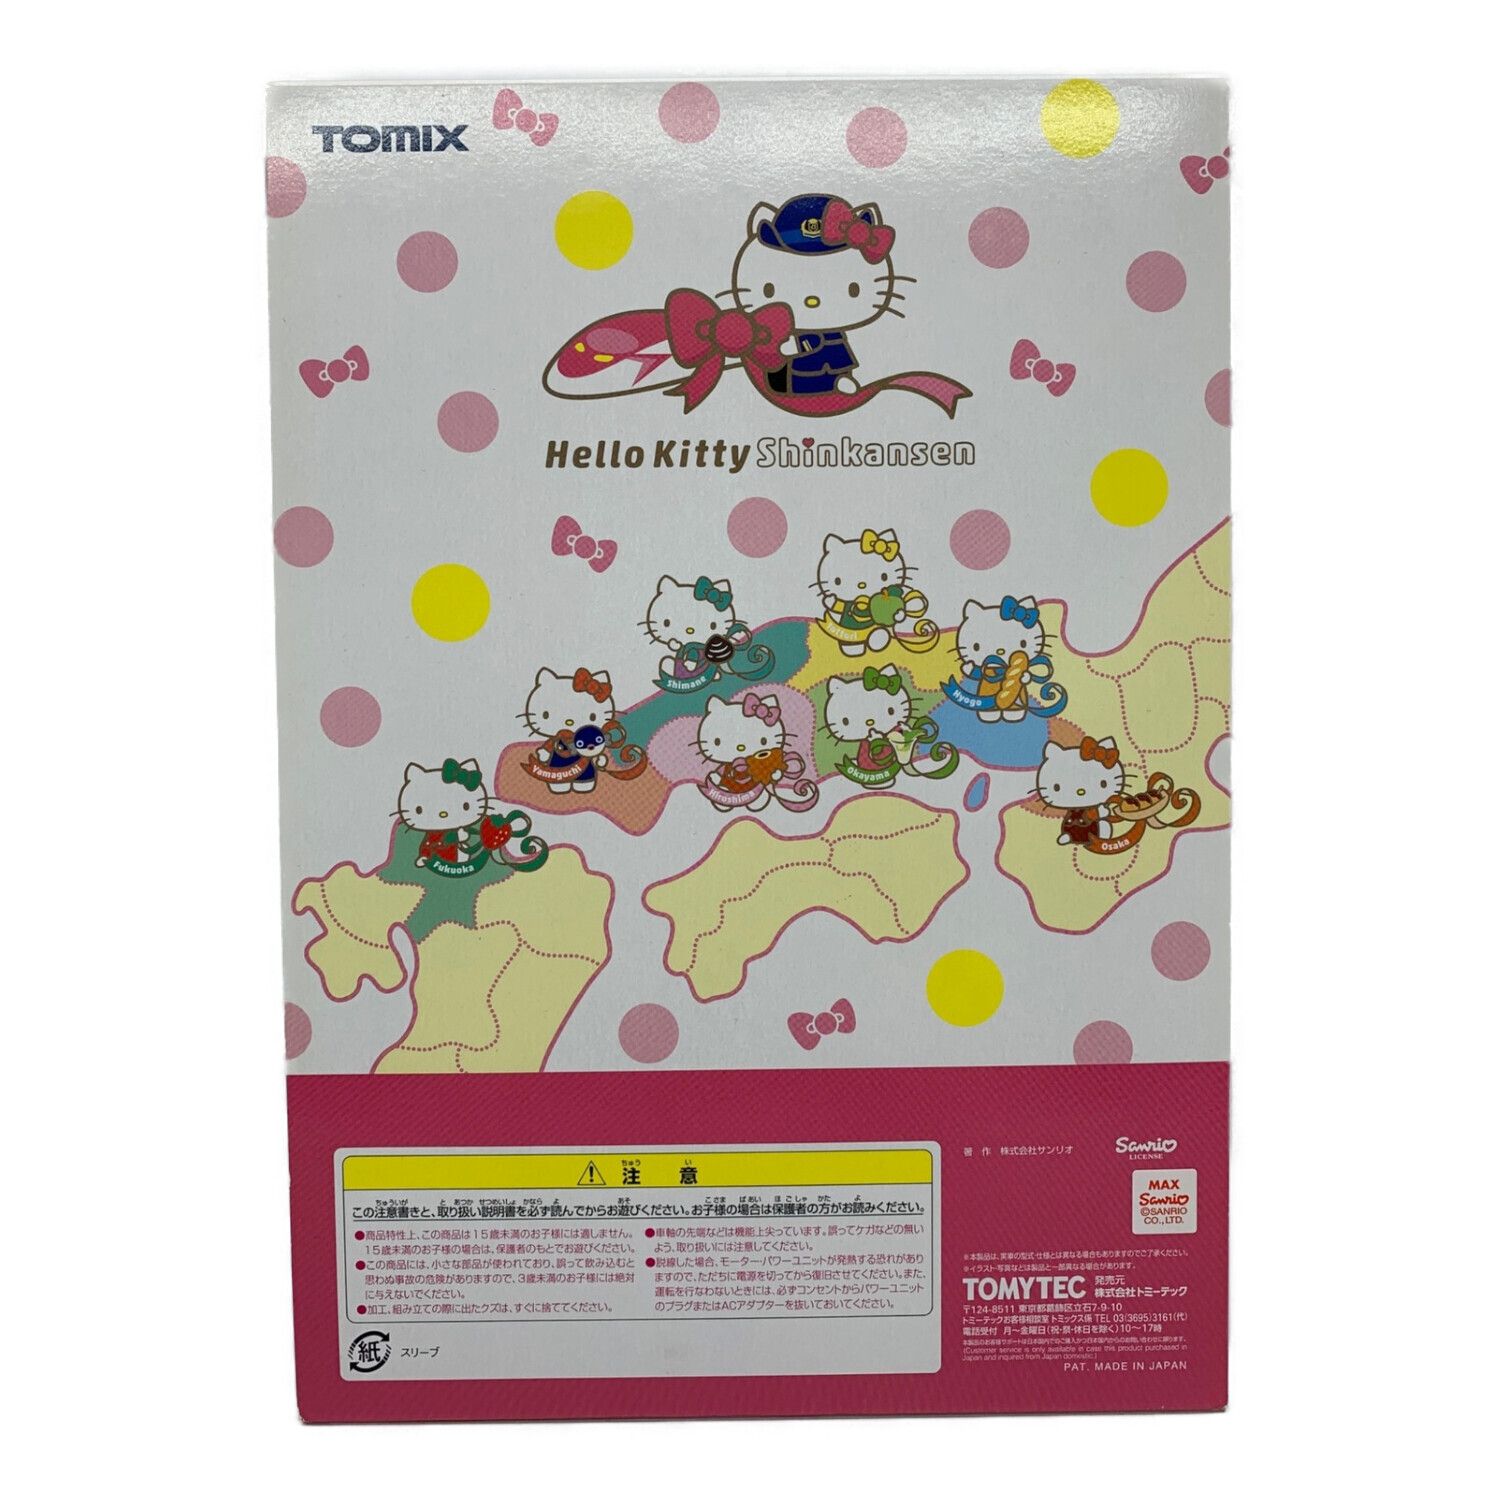 TOMIX (トミックス) Nゲージ JR500 7000系山陽新幹線(ハローキティ